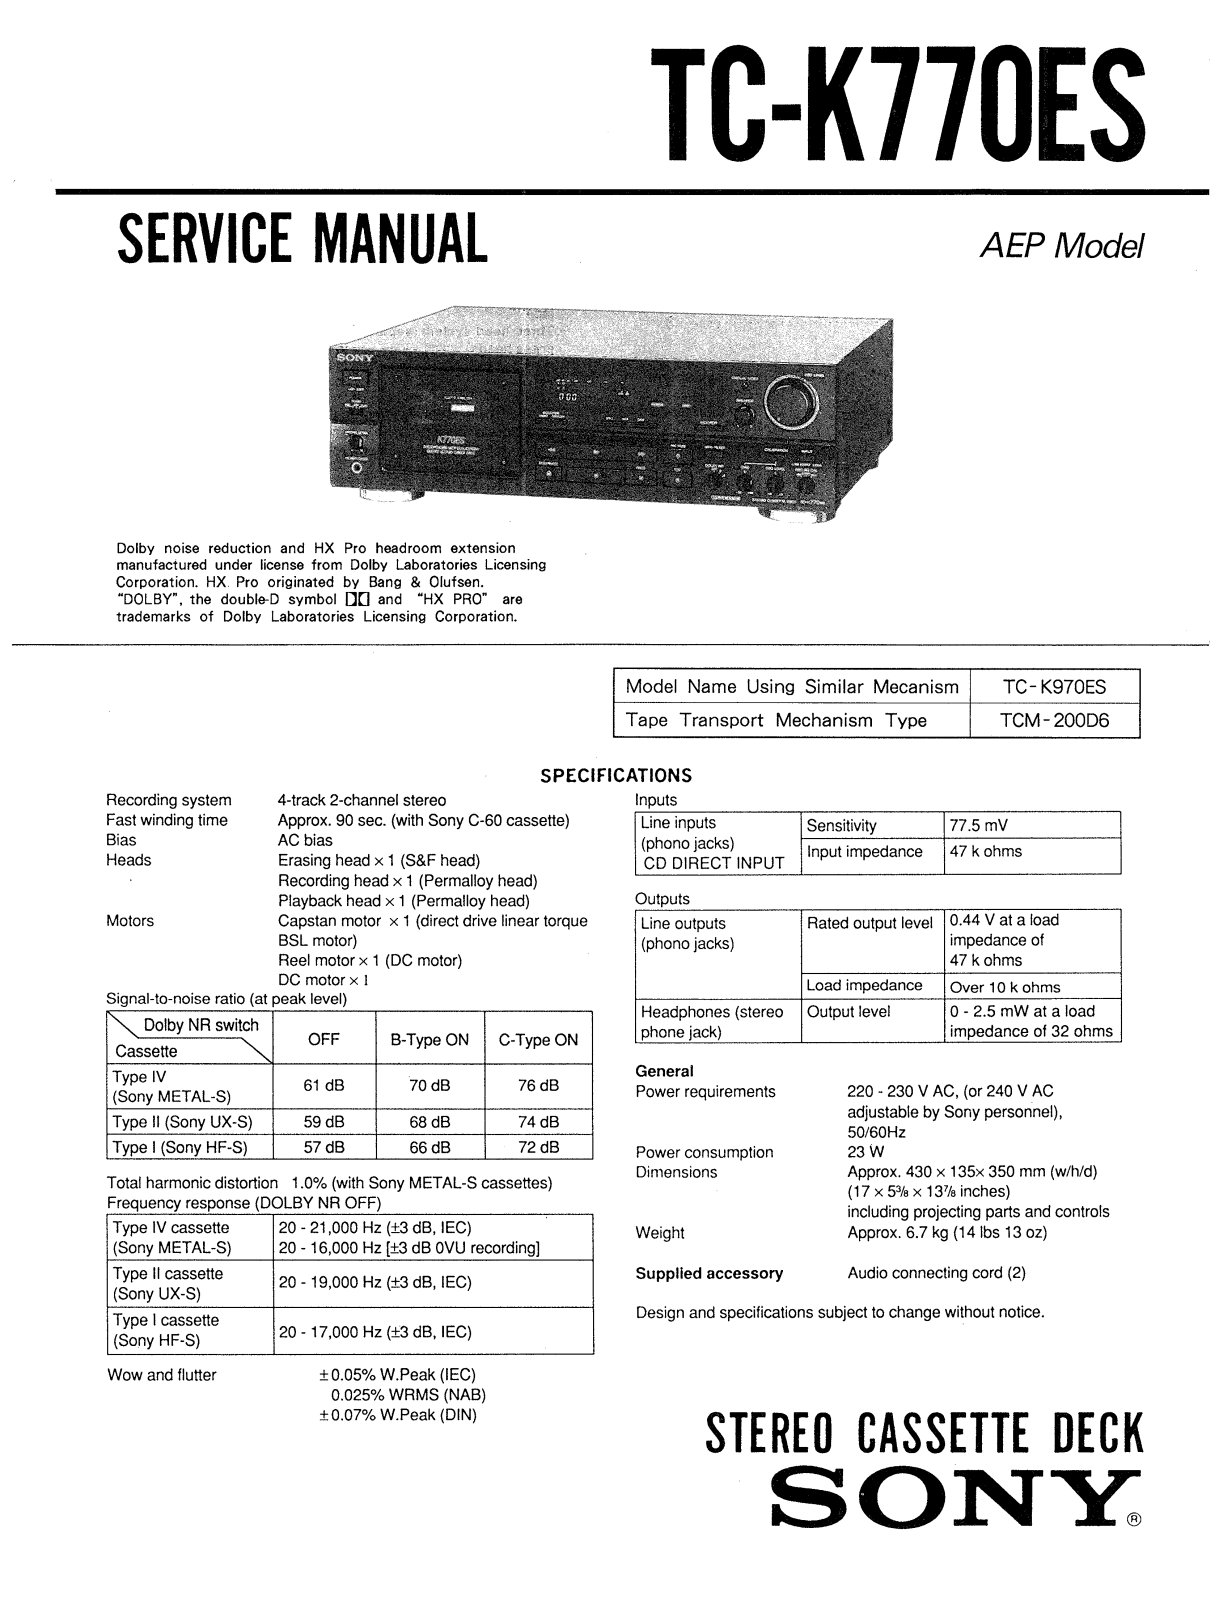 Sony TCK-770-ES Service manual